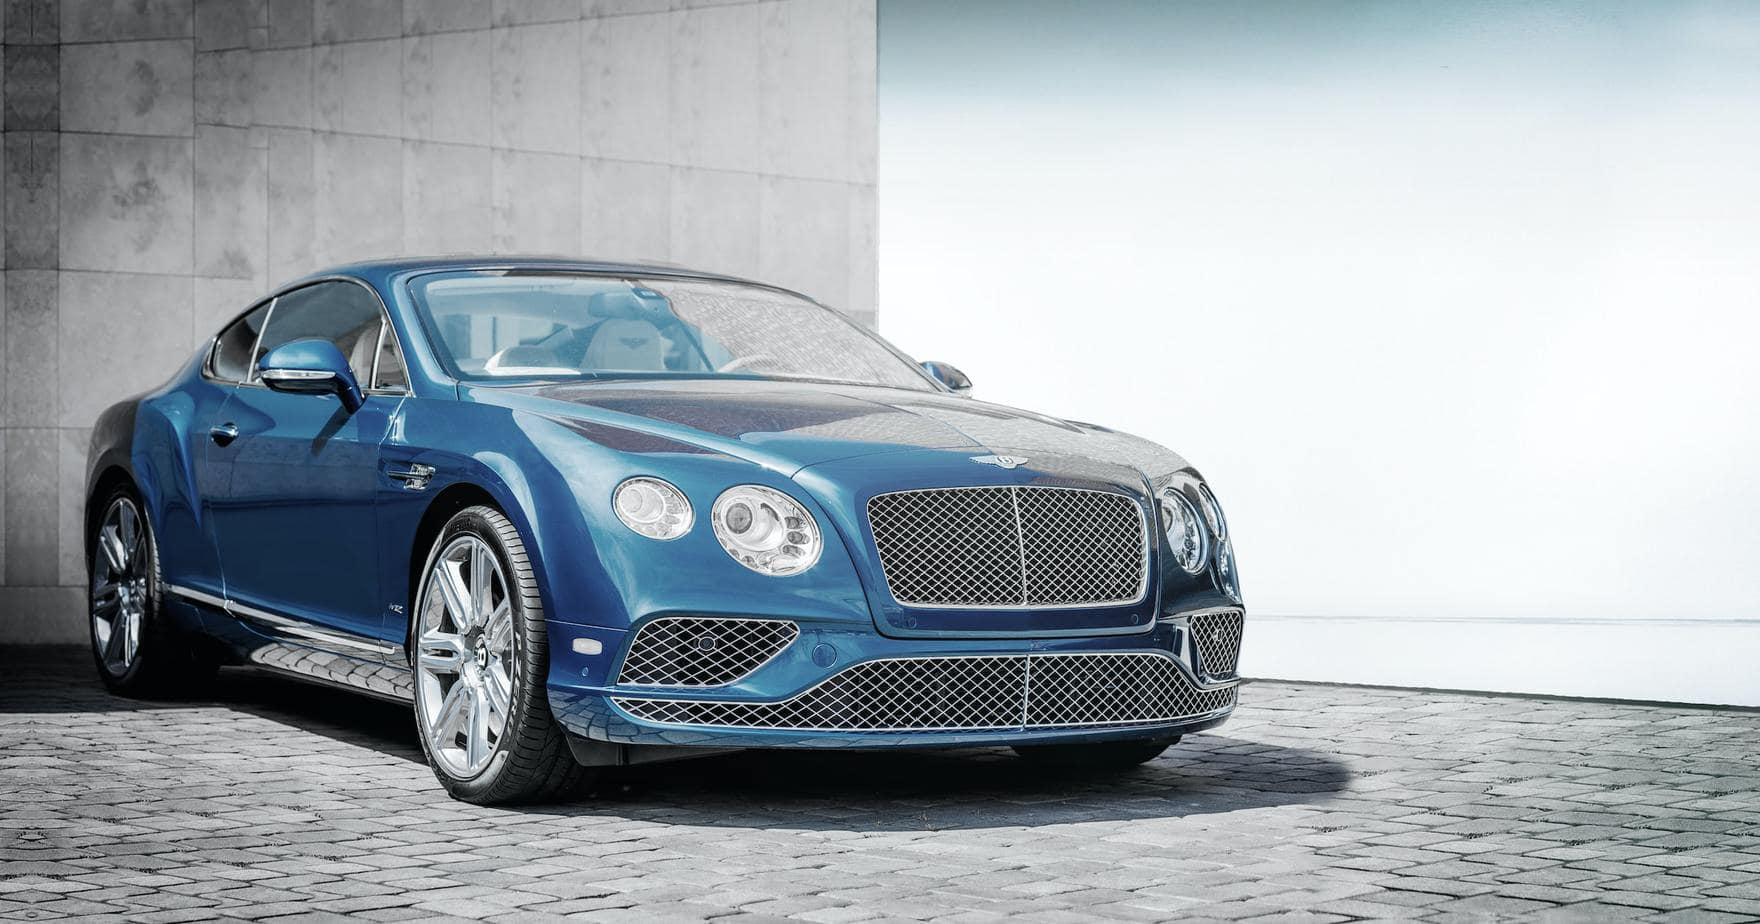 Znanej aktorce skradziono Bentleya wartego 750 tysięcy złotych!